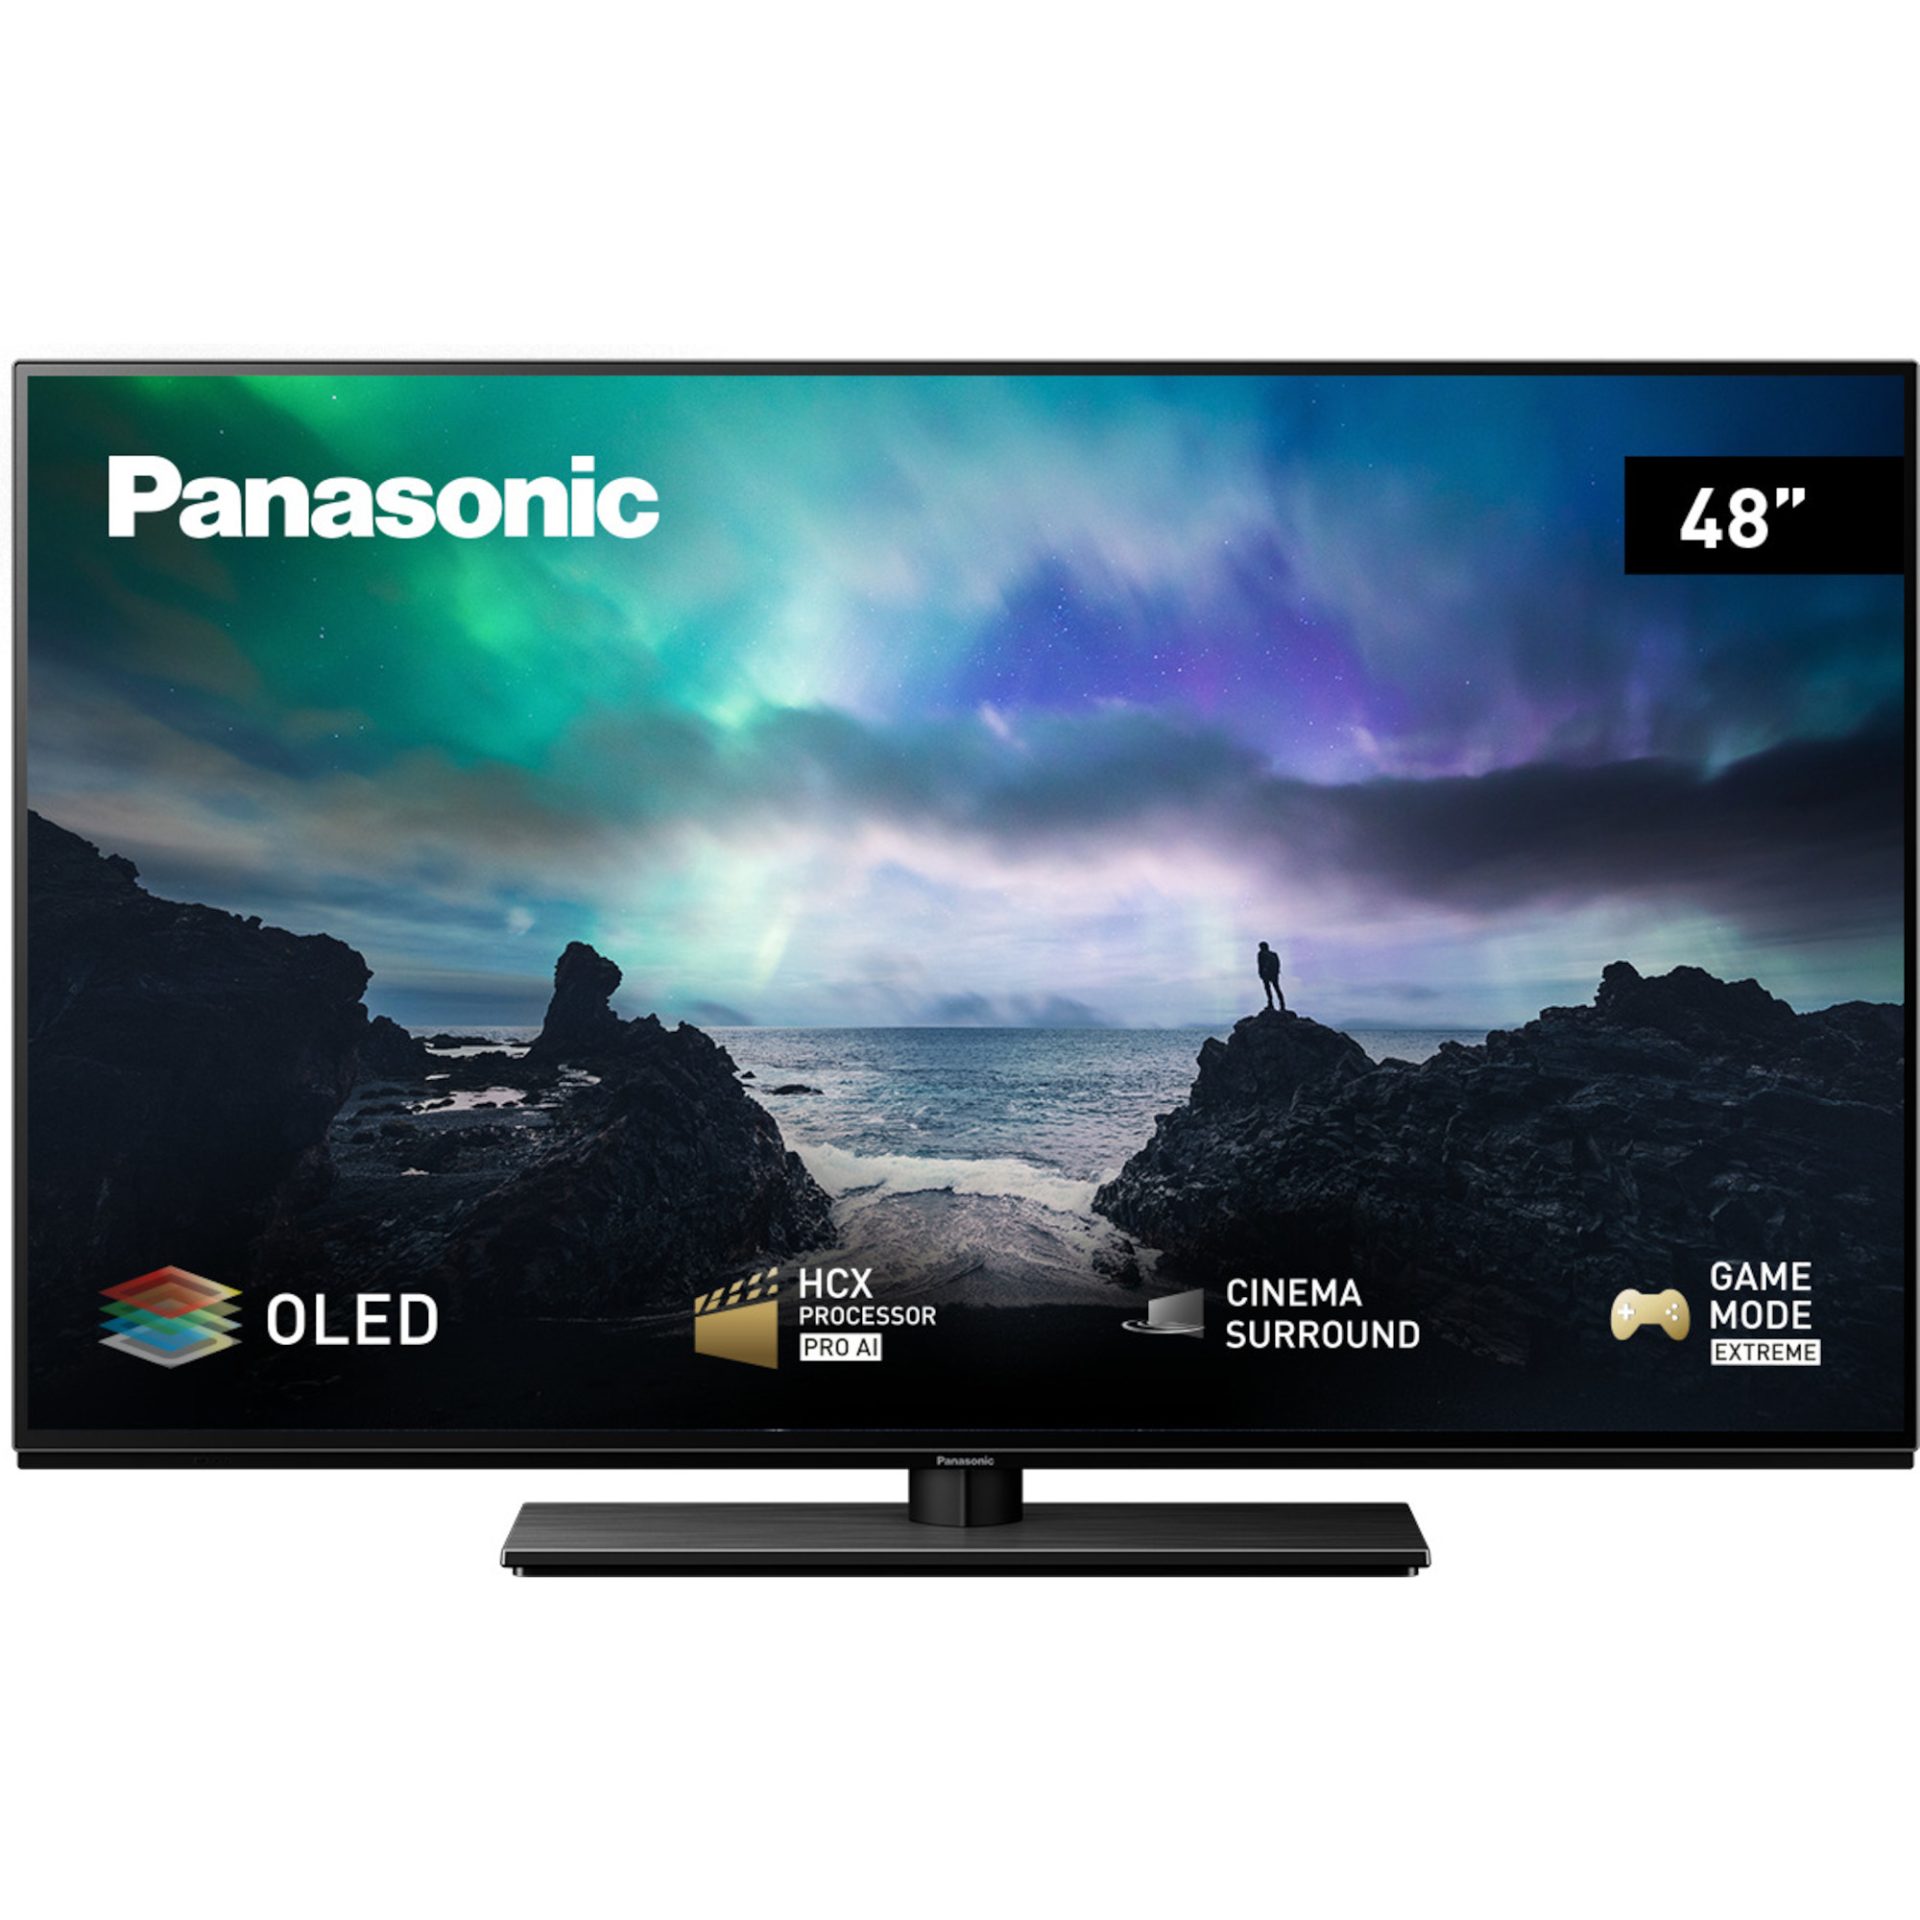 Panasonic TX-48LZ800 Smart TV OLED TV 4K HDR 48\